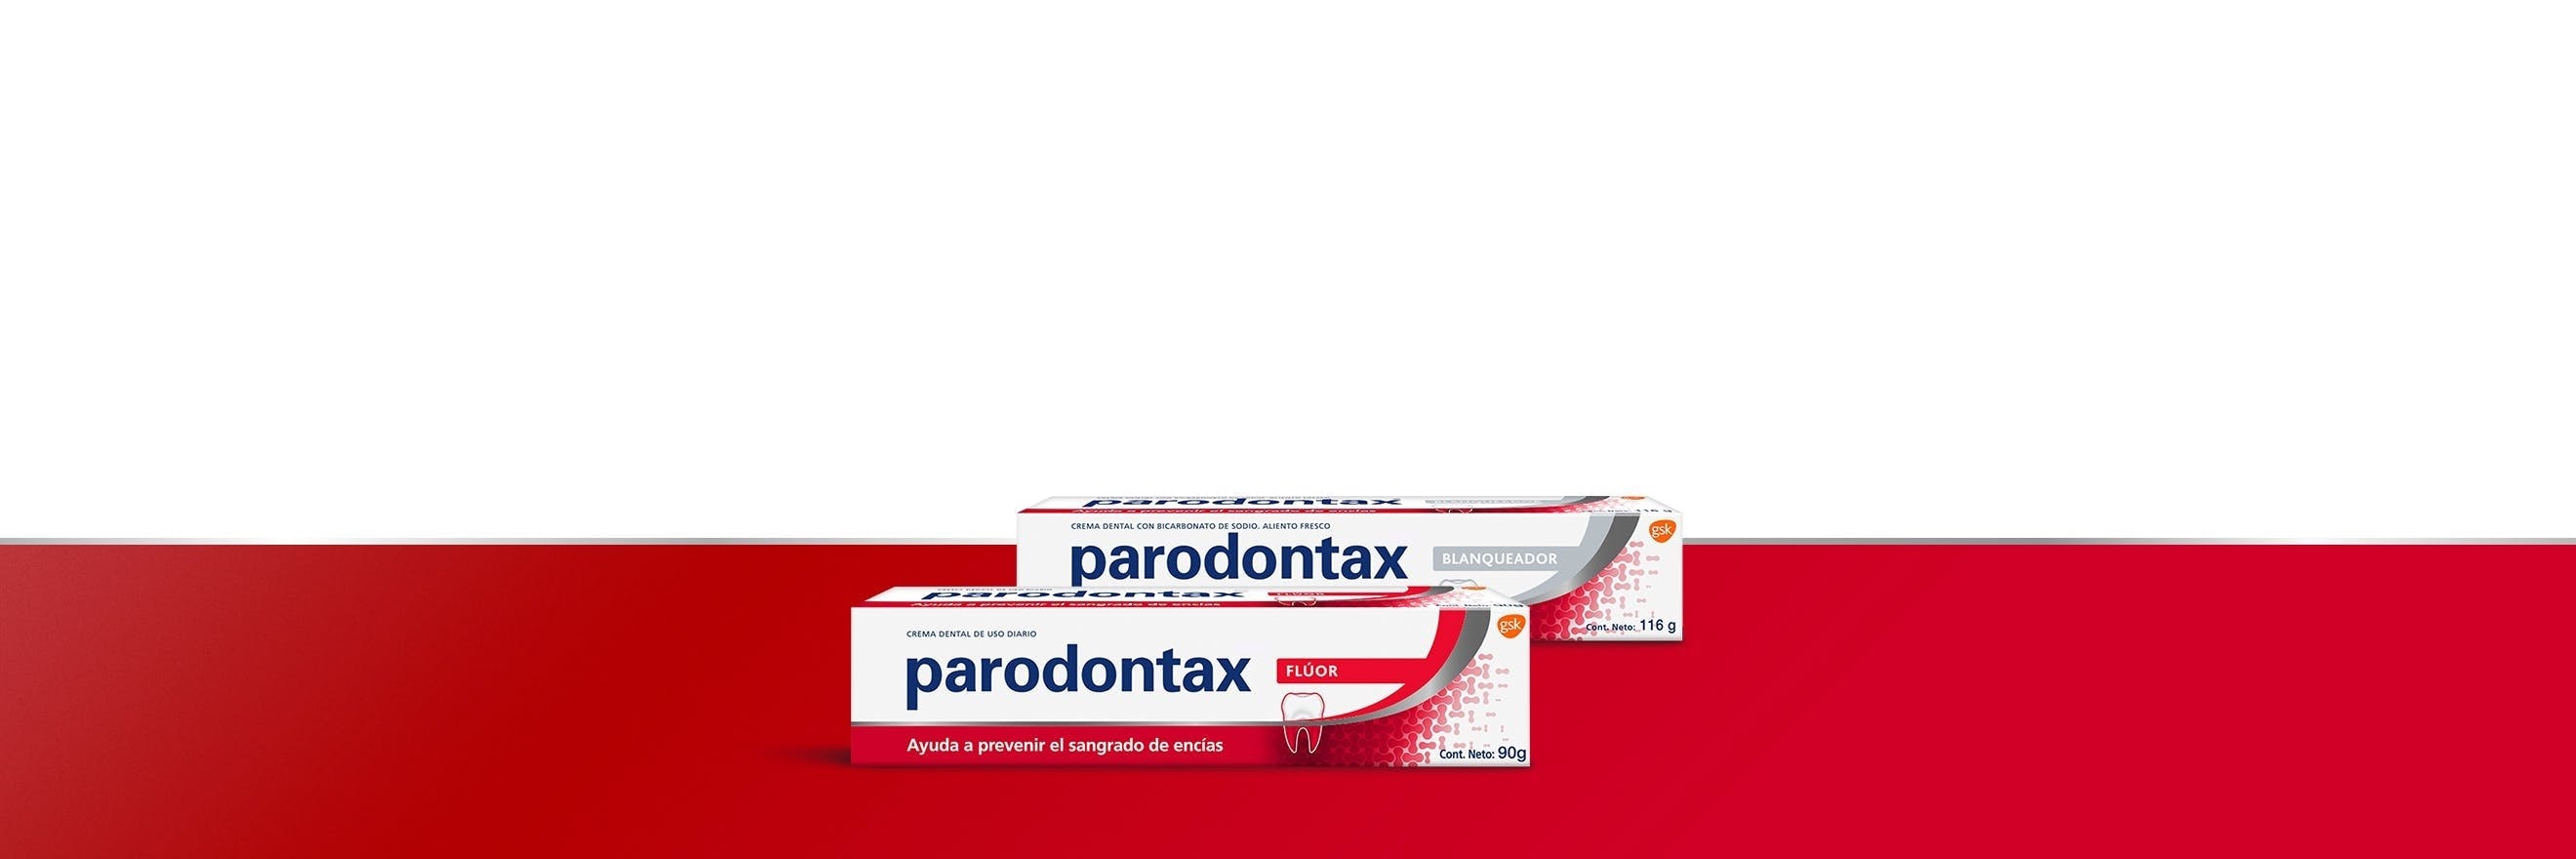 Gama de productos de uso diario parodontax